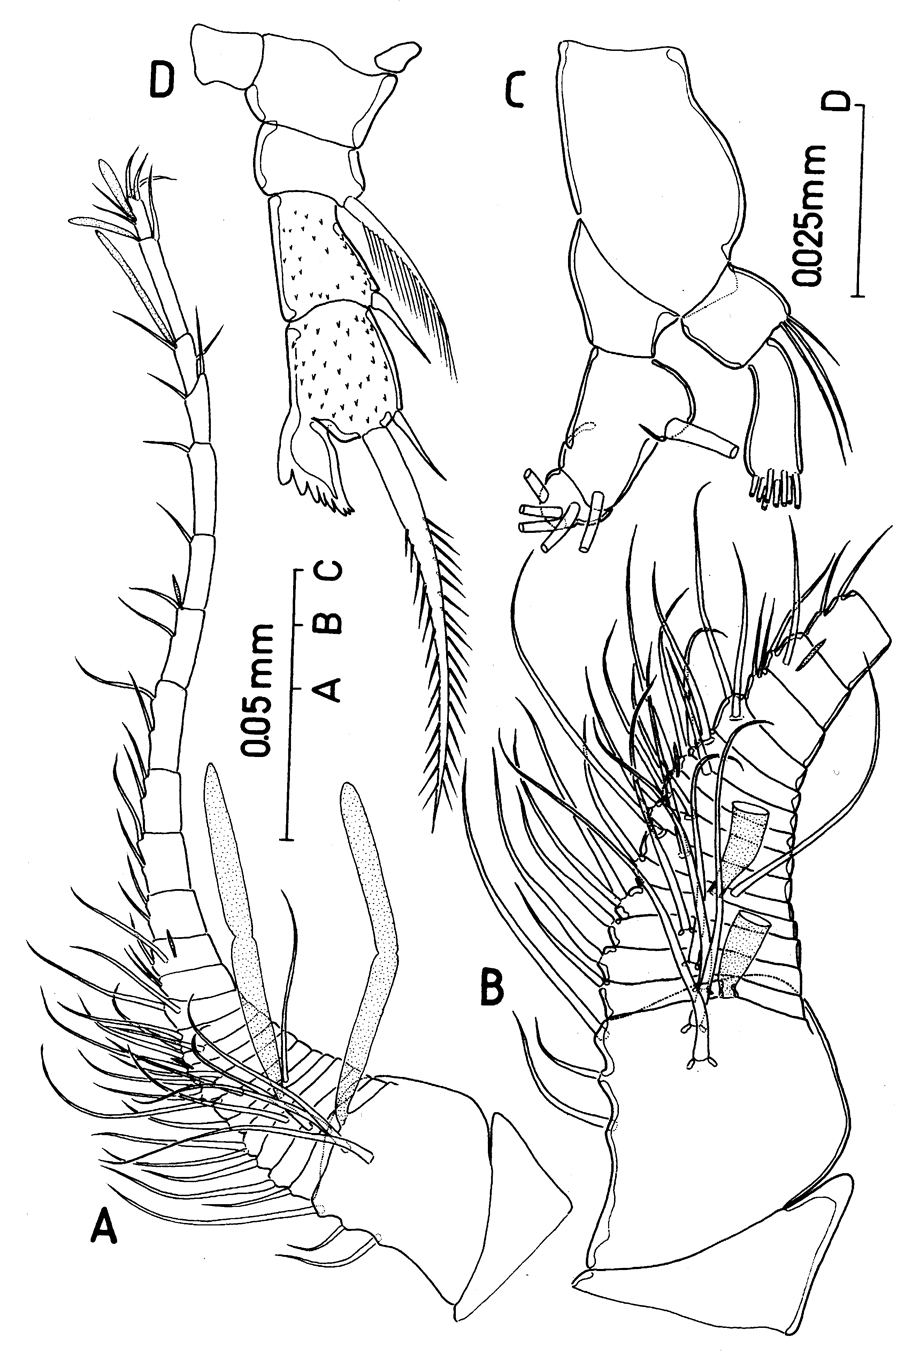 Espce Protospeleophria lucayae - Planche 2 de figures morphologiques